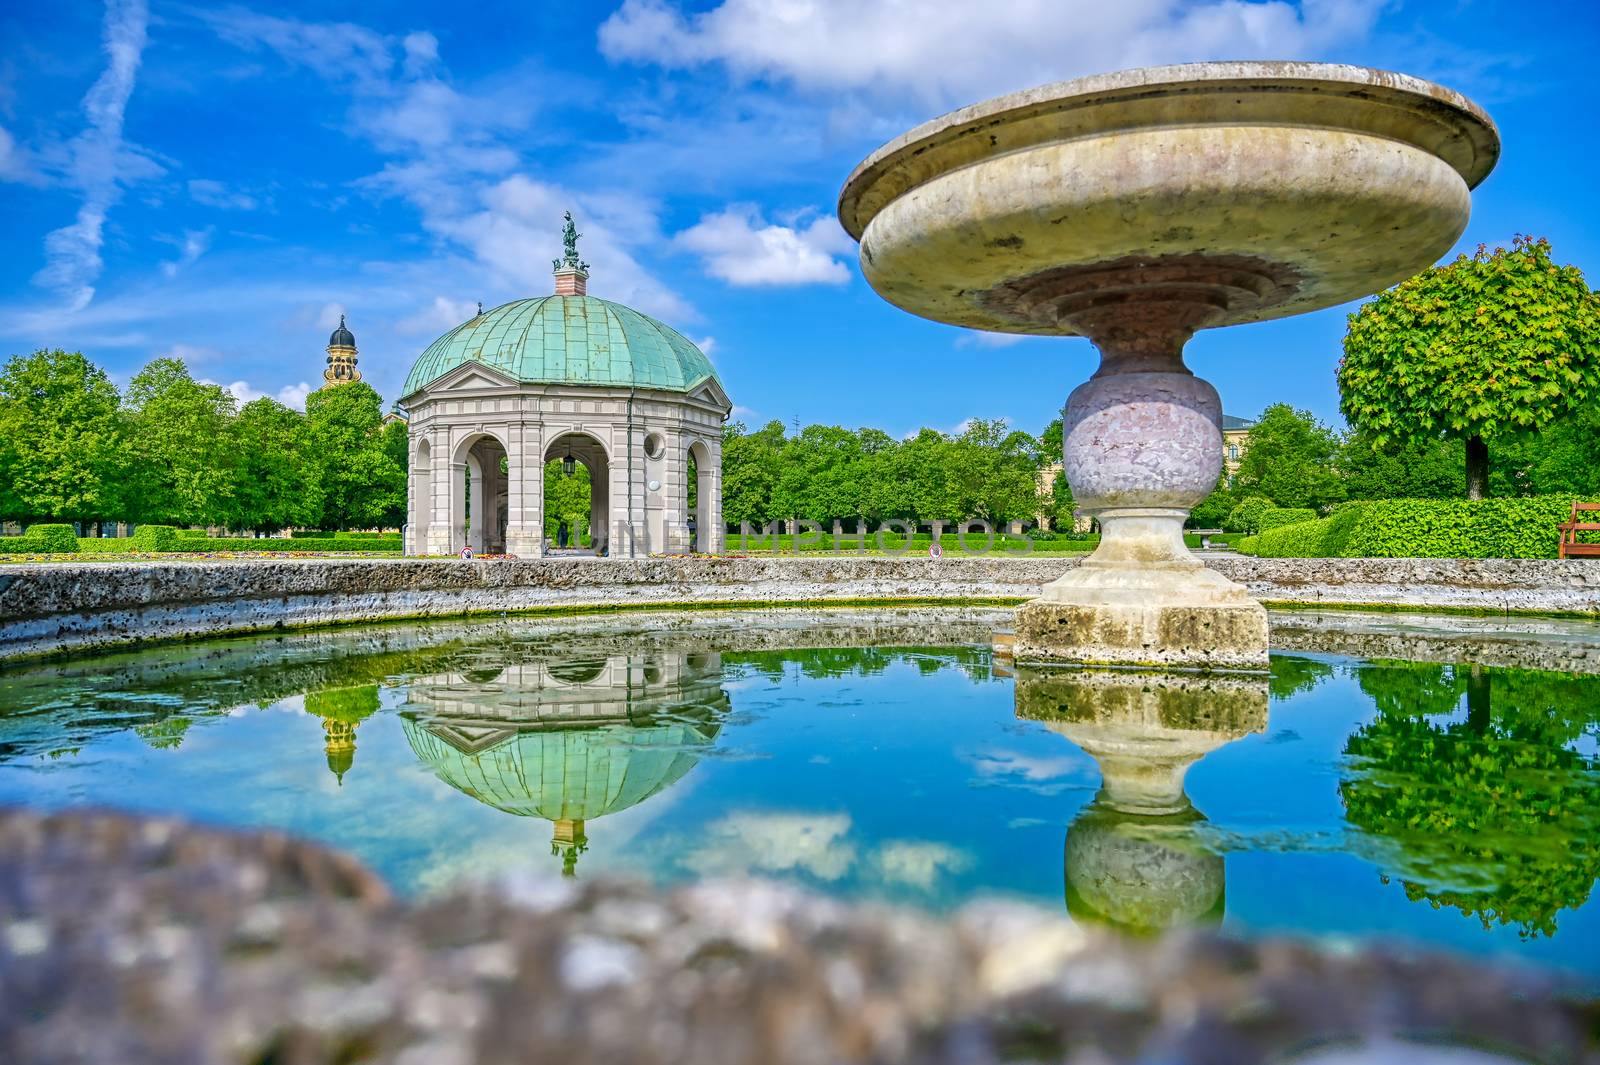 The Hofgarten in Munich, Germany by jbyard22